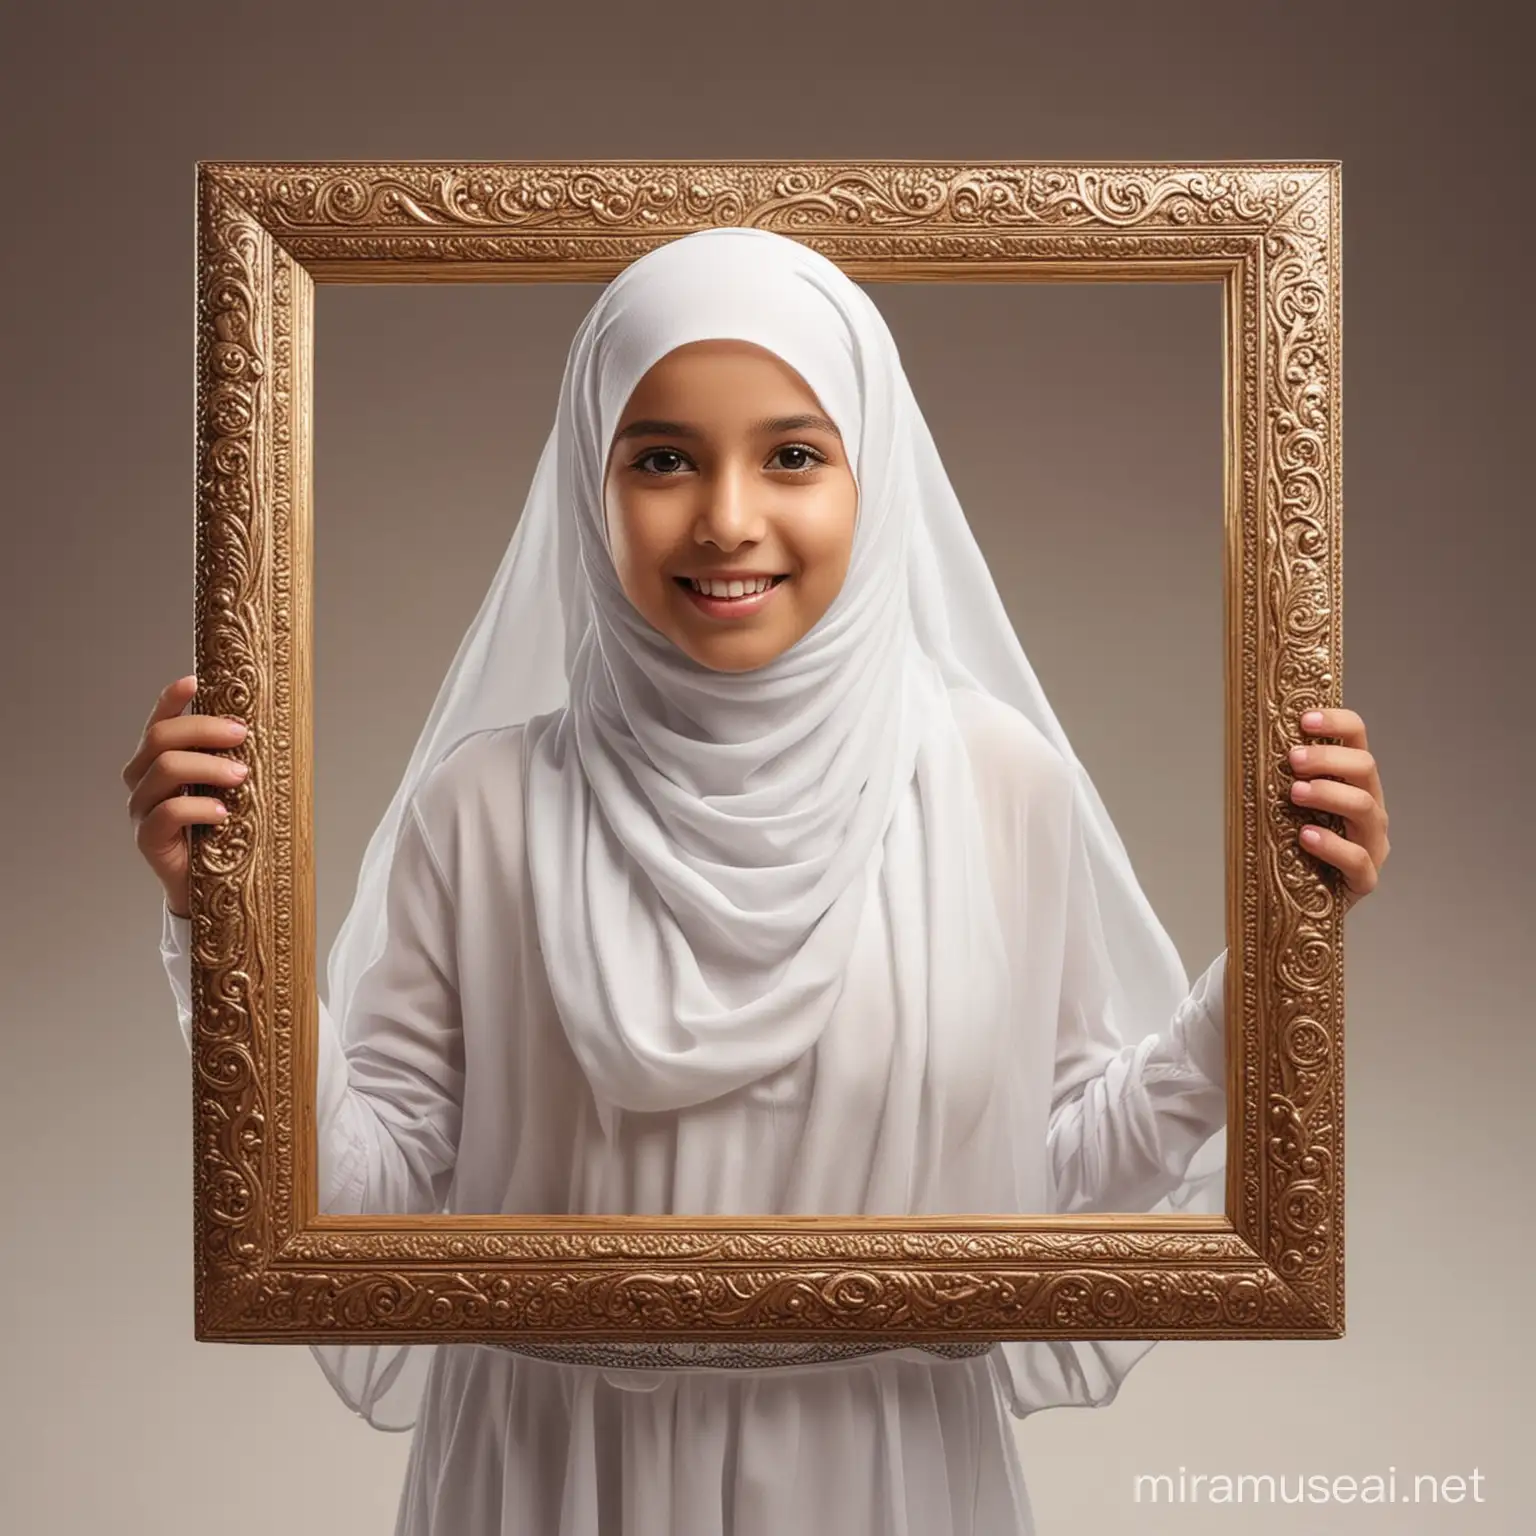  ابعد الكادر قليلا 
فتاة مسلمة جميلة